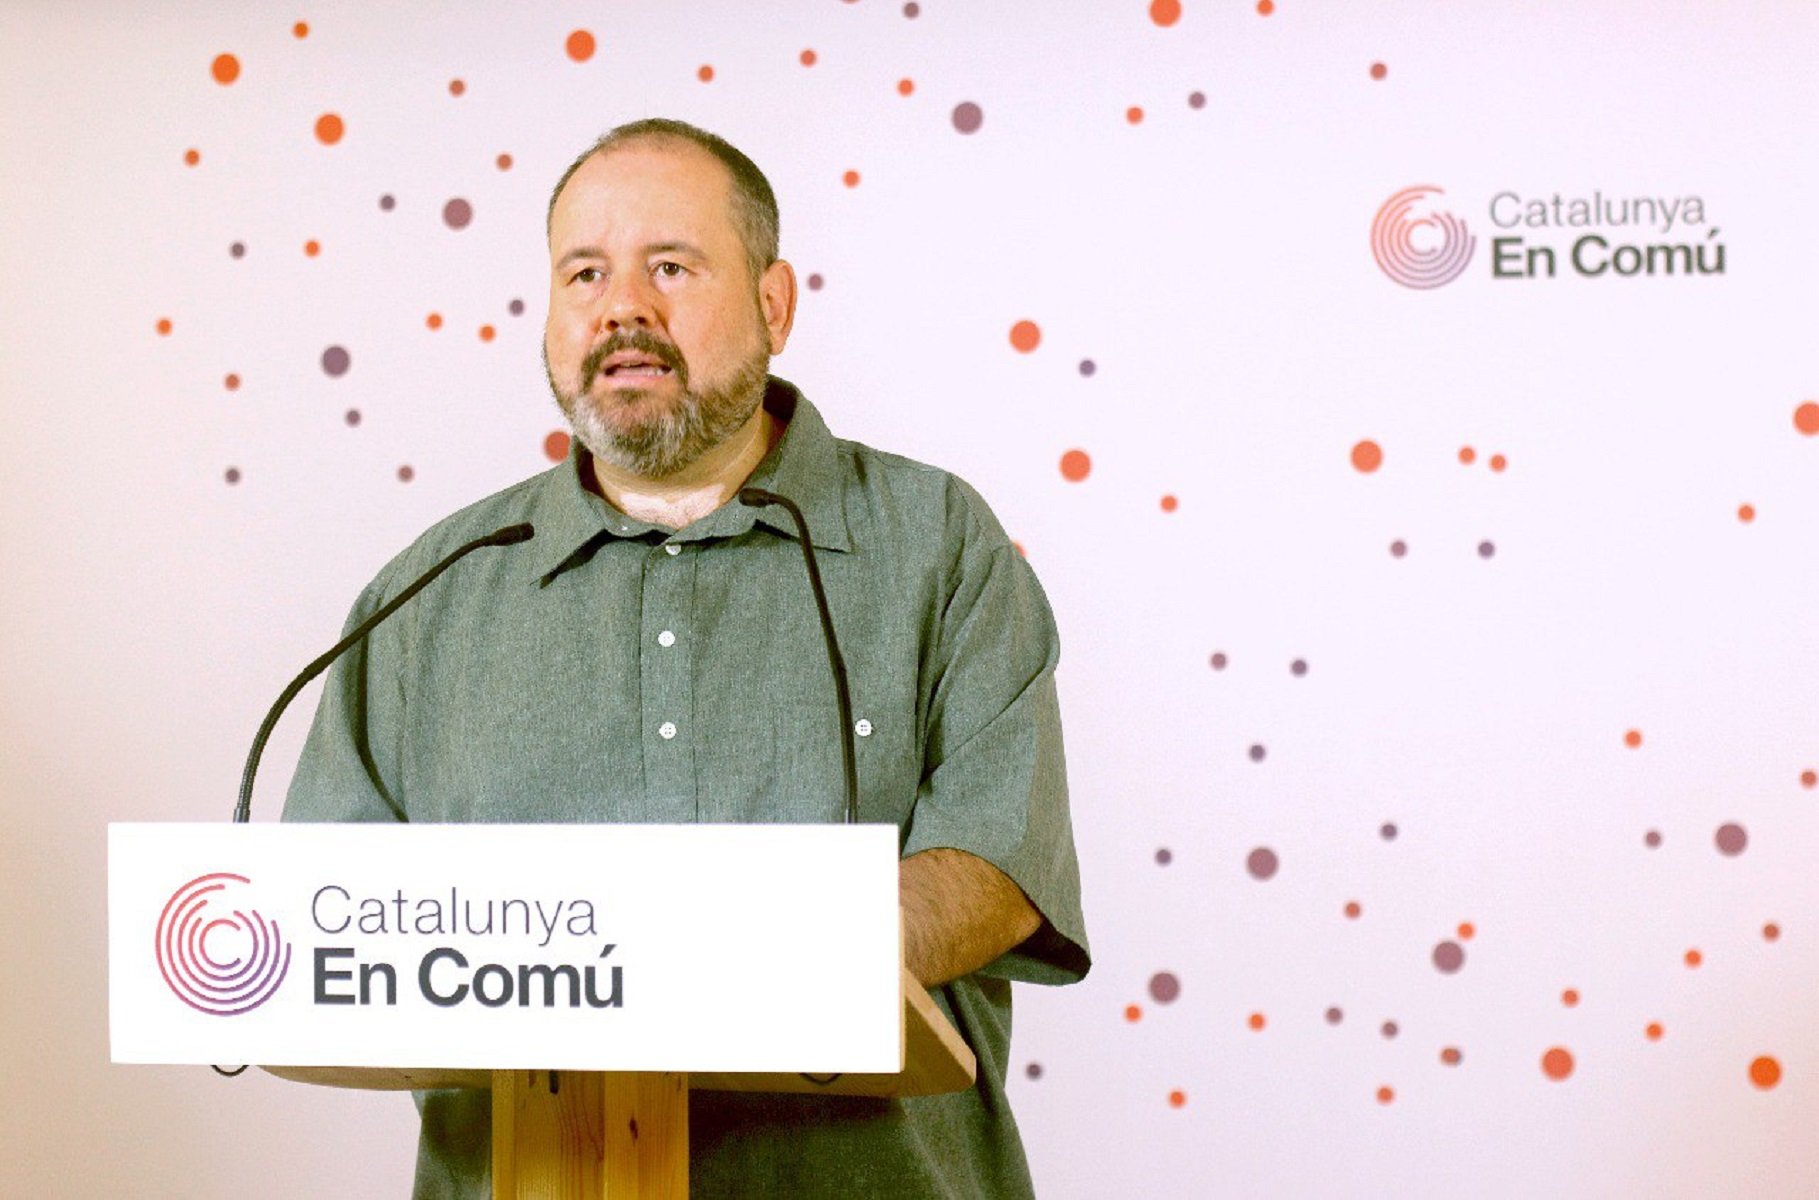 Los comuns: el diálogo beneficiará a Puigdemont "aunque lo quiera dinamitar"